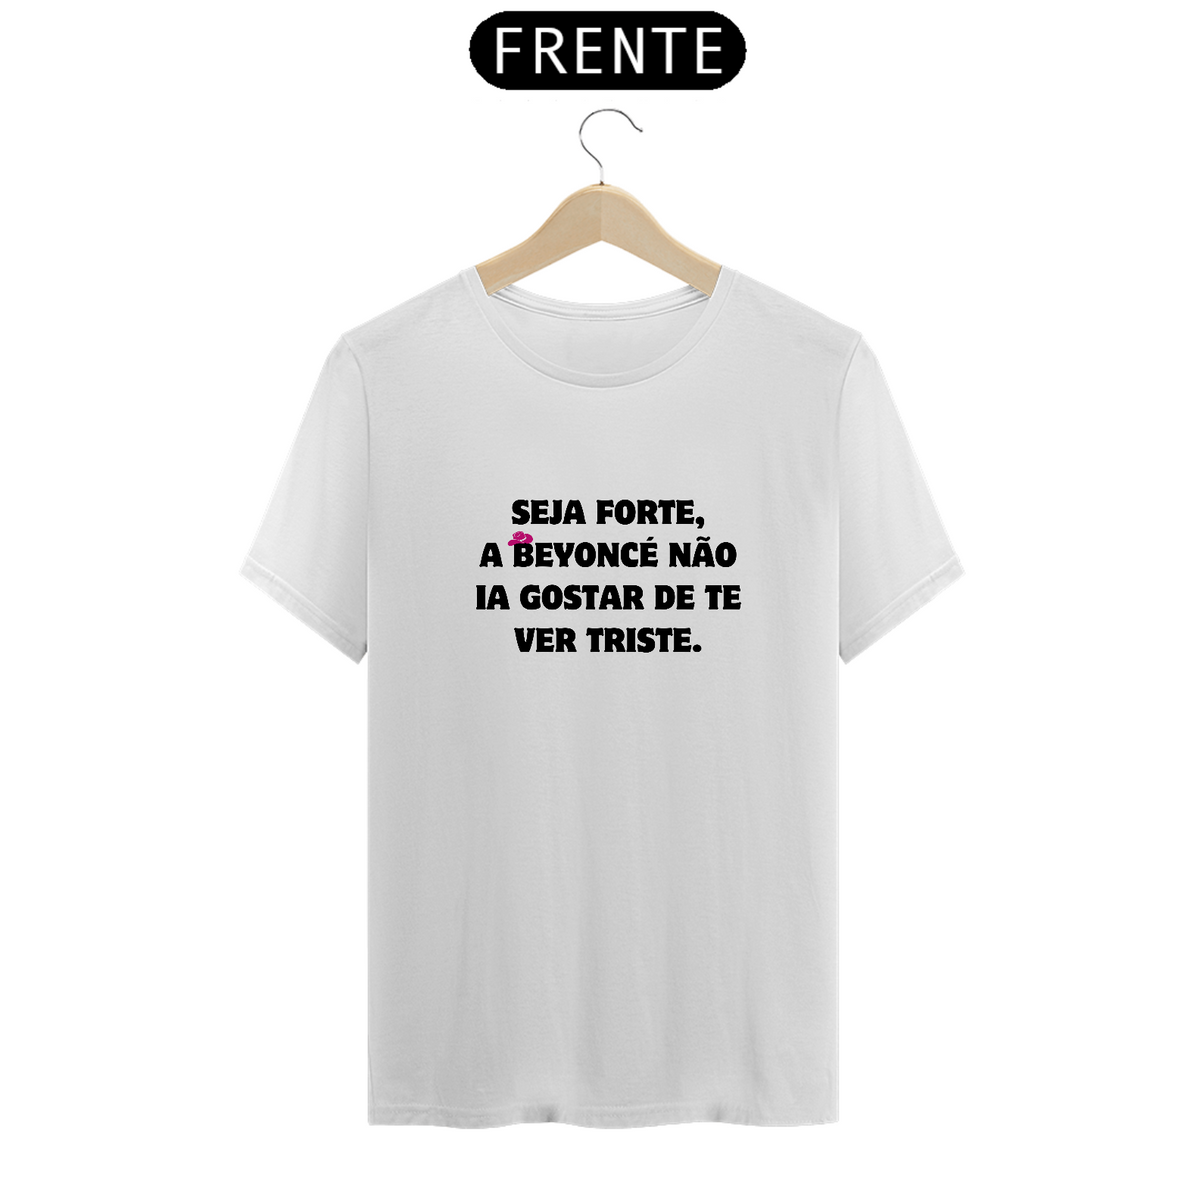 Nome do produto: Camiseta Seja forte a Beyoncé não ia gostar de te ver triste